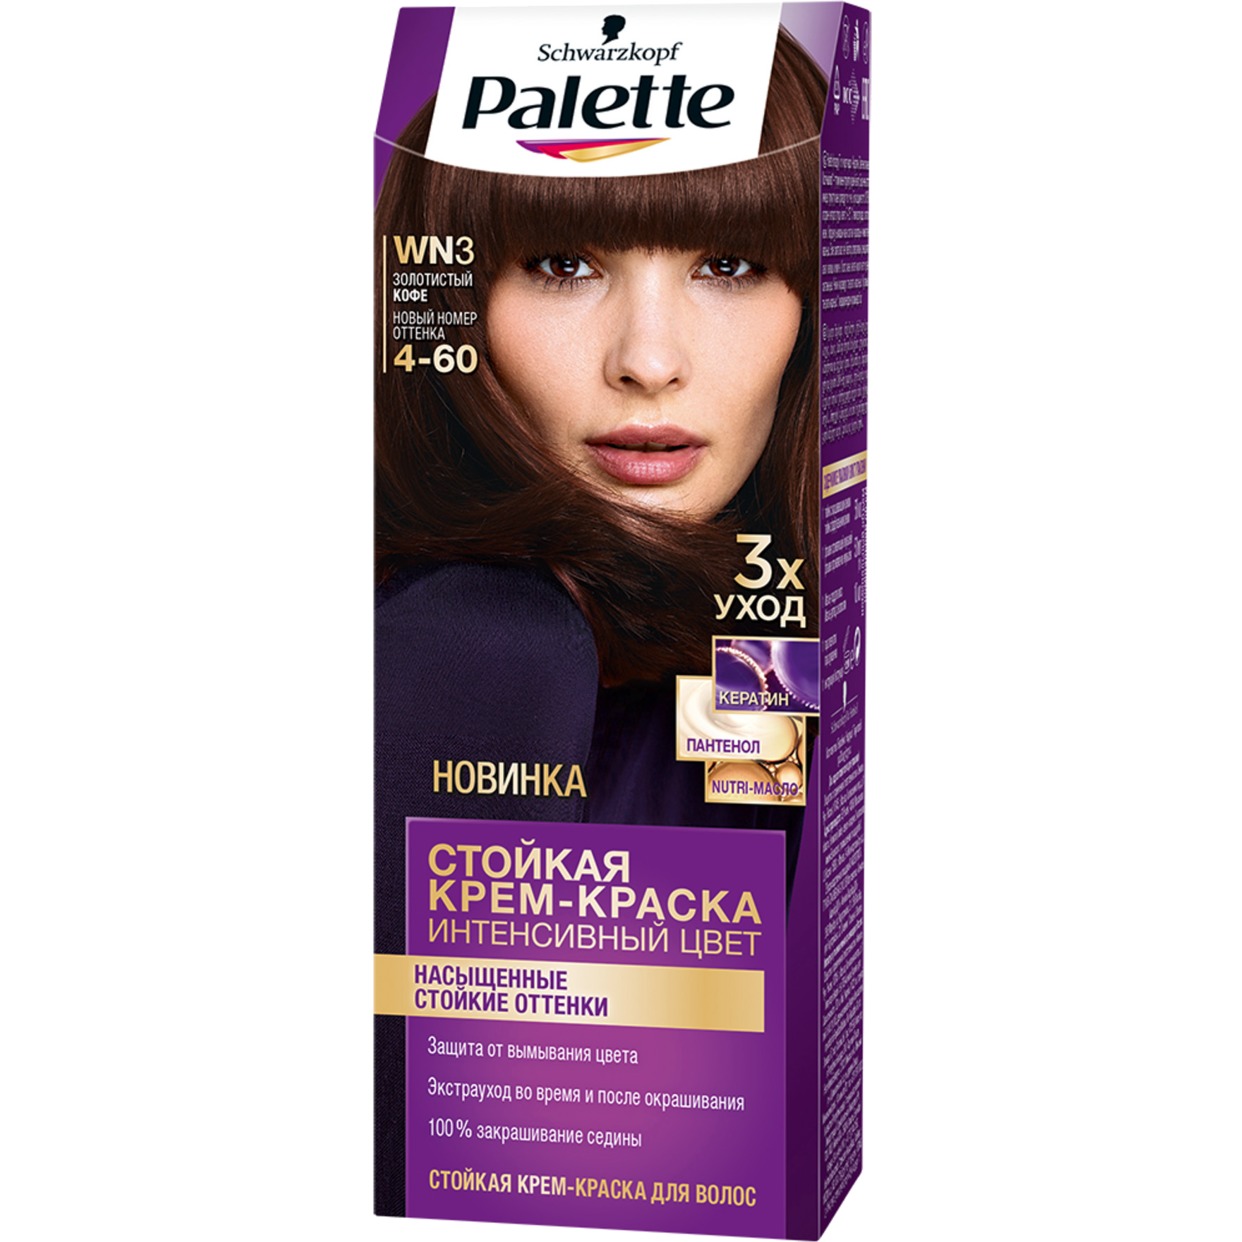 Крем-краска для волос Palette WN3 золотистый кофе по акции в Пятерочке